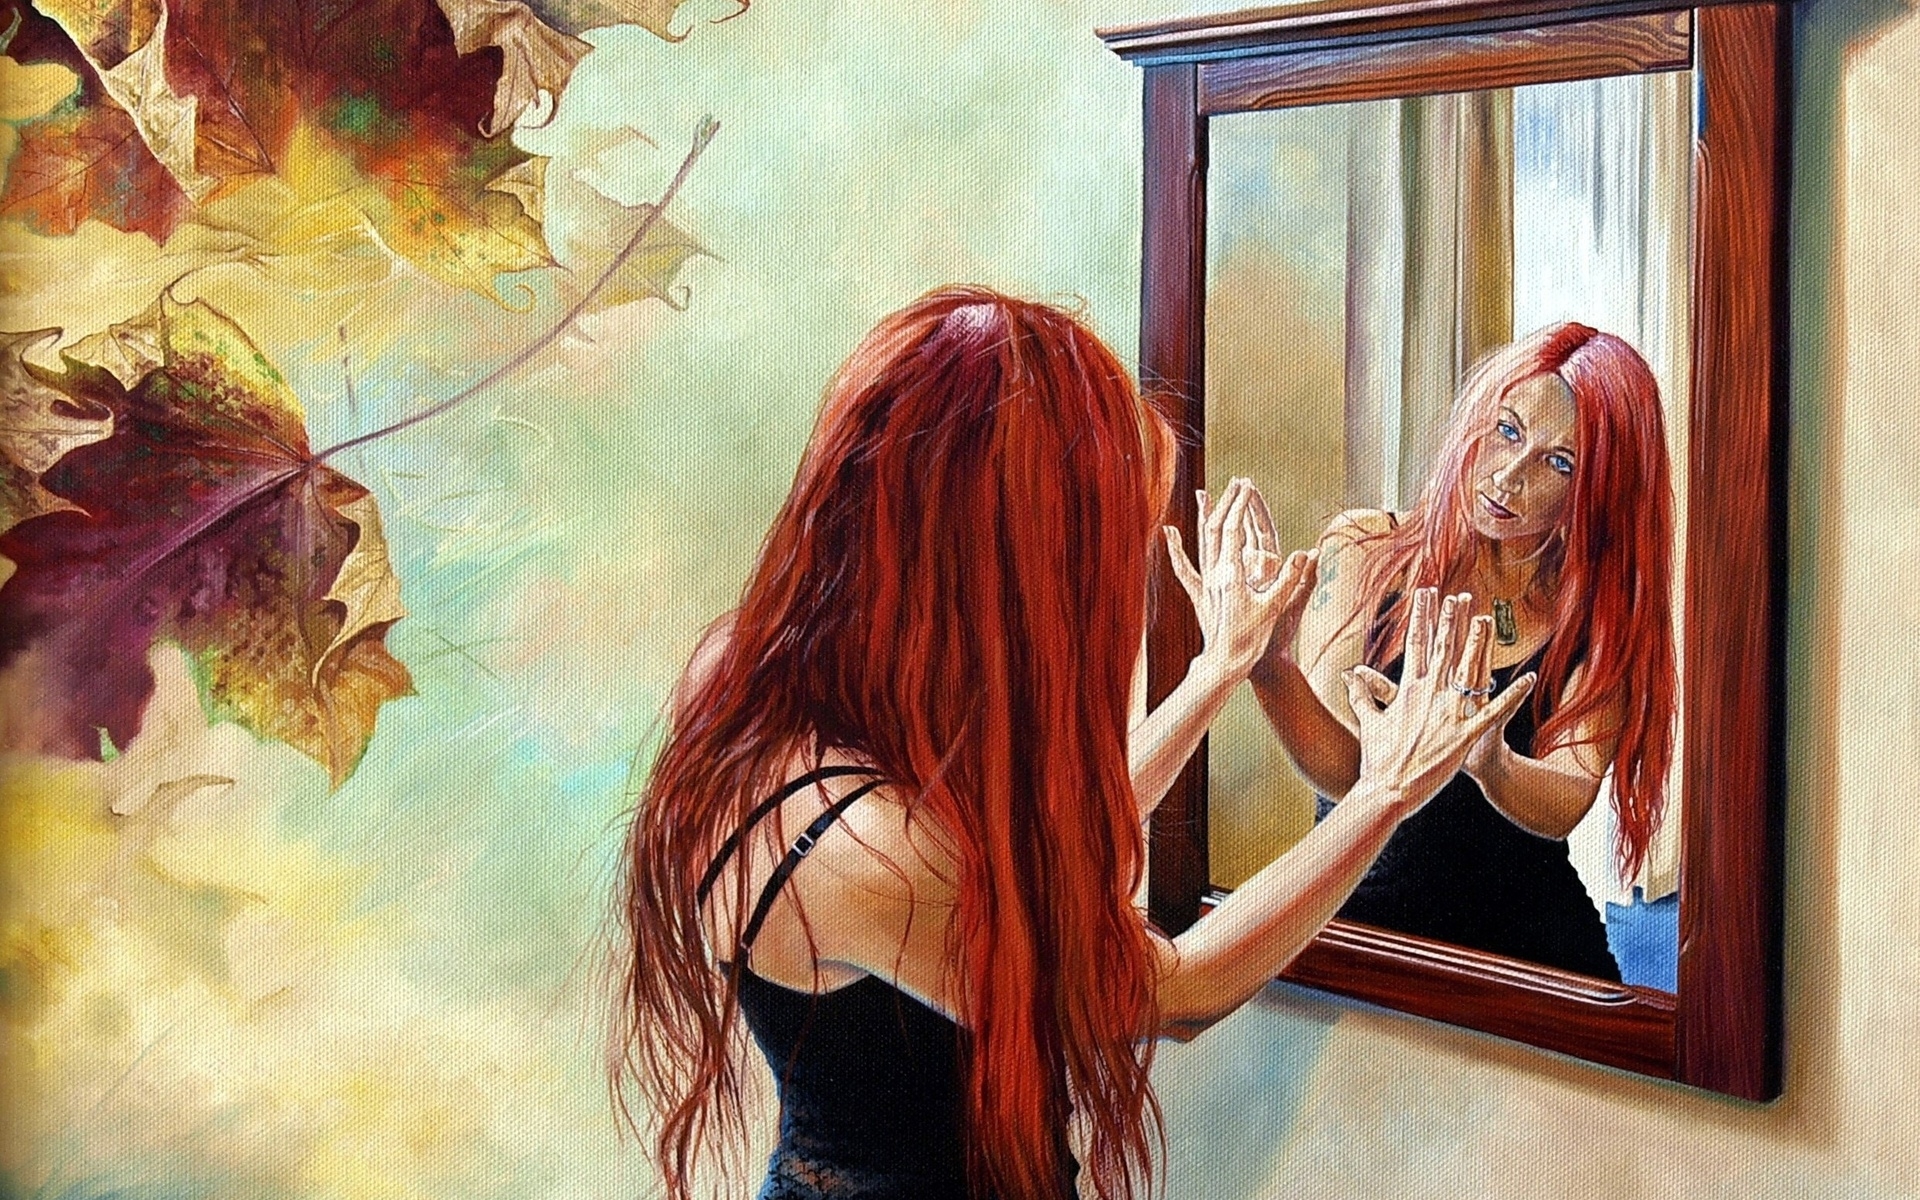 В зеркале вижу себя другой. Отражение в зеркале арт. Картина с рыжей девушкой. Отражение в зеркале живопись. Арты отражение в зеркале.